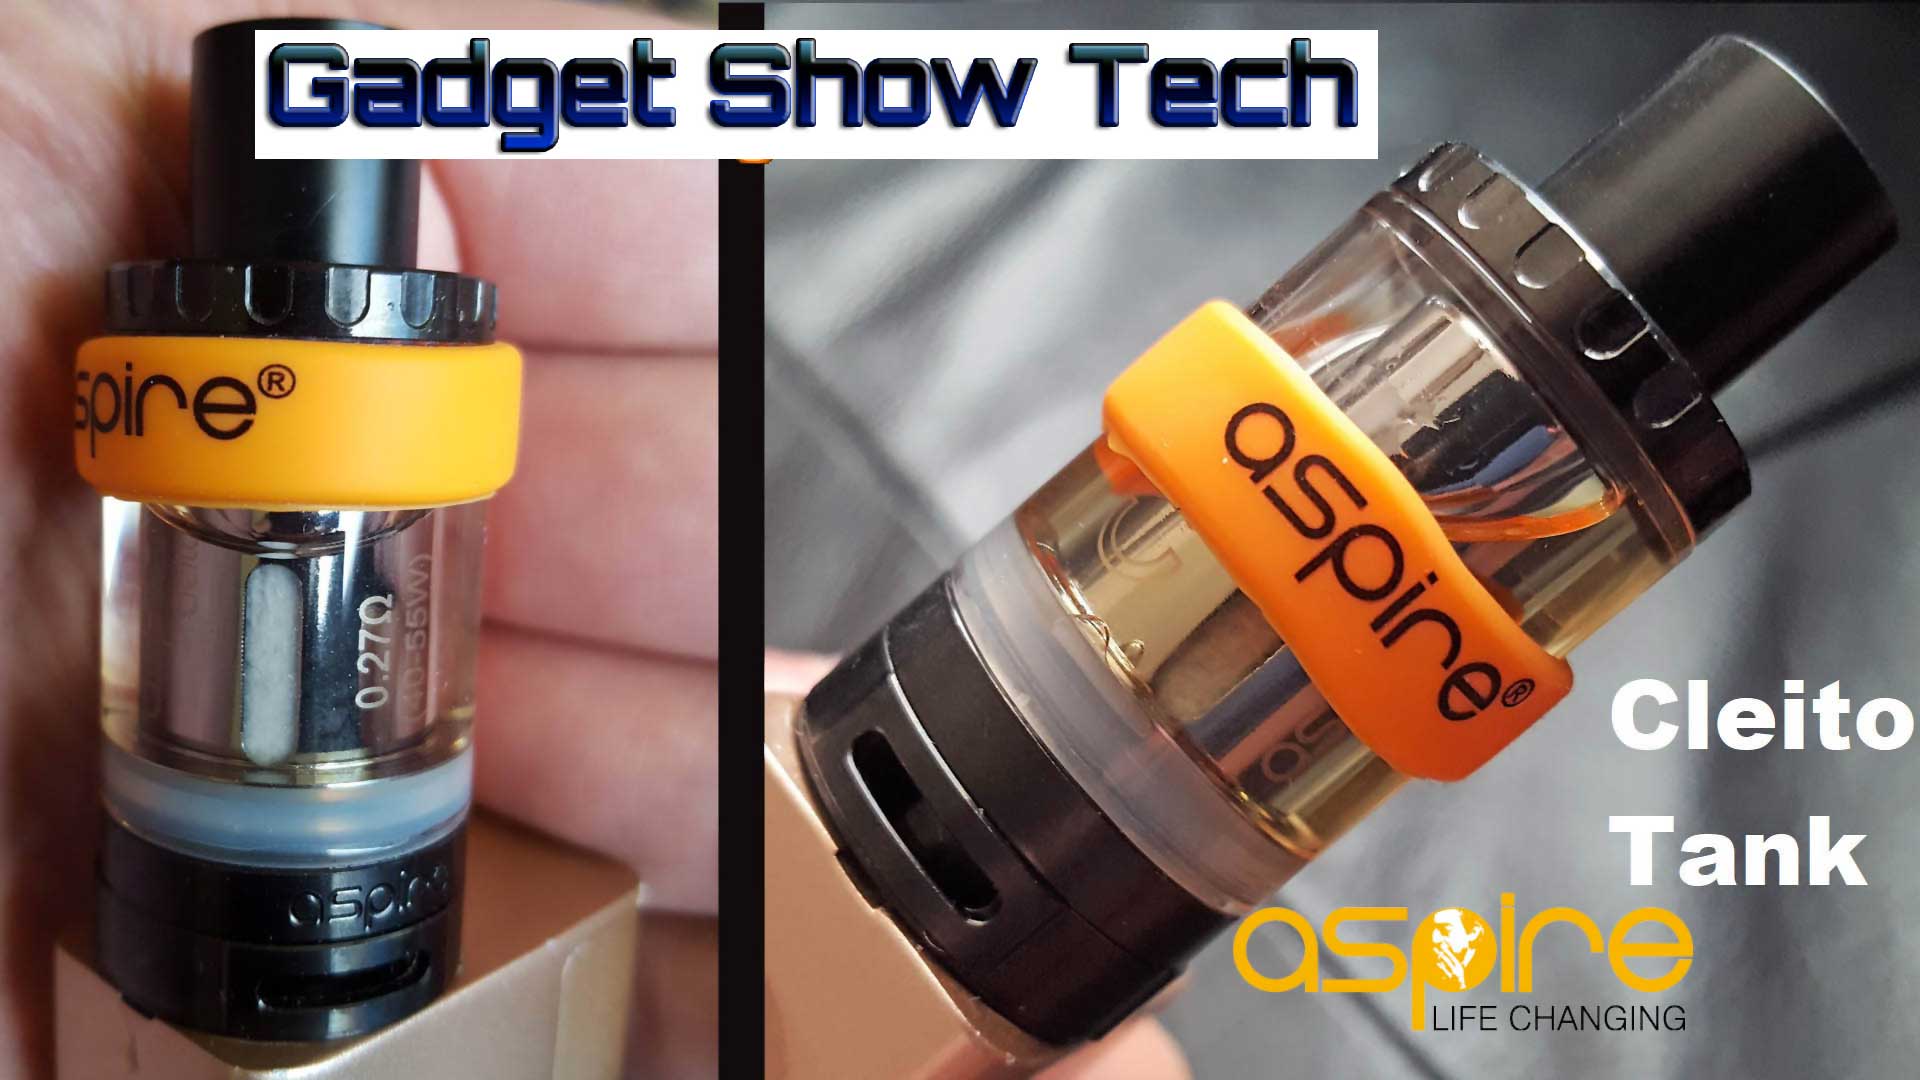 aspire Cleito 3.5ml Tank E-cig, E-liquid and Vaping Gadget Technology  Reviews